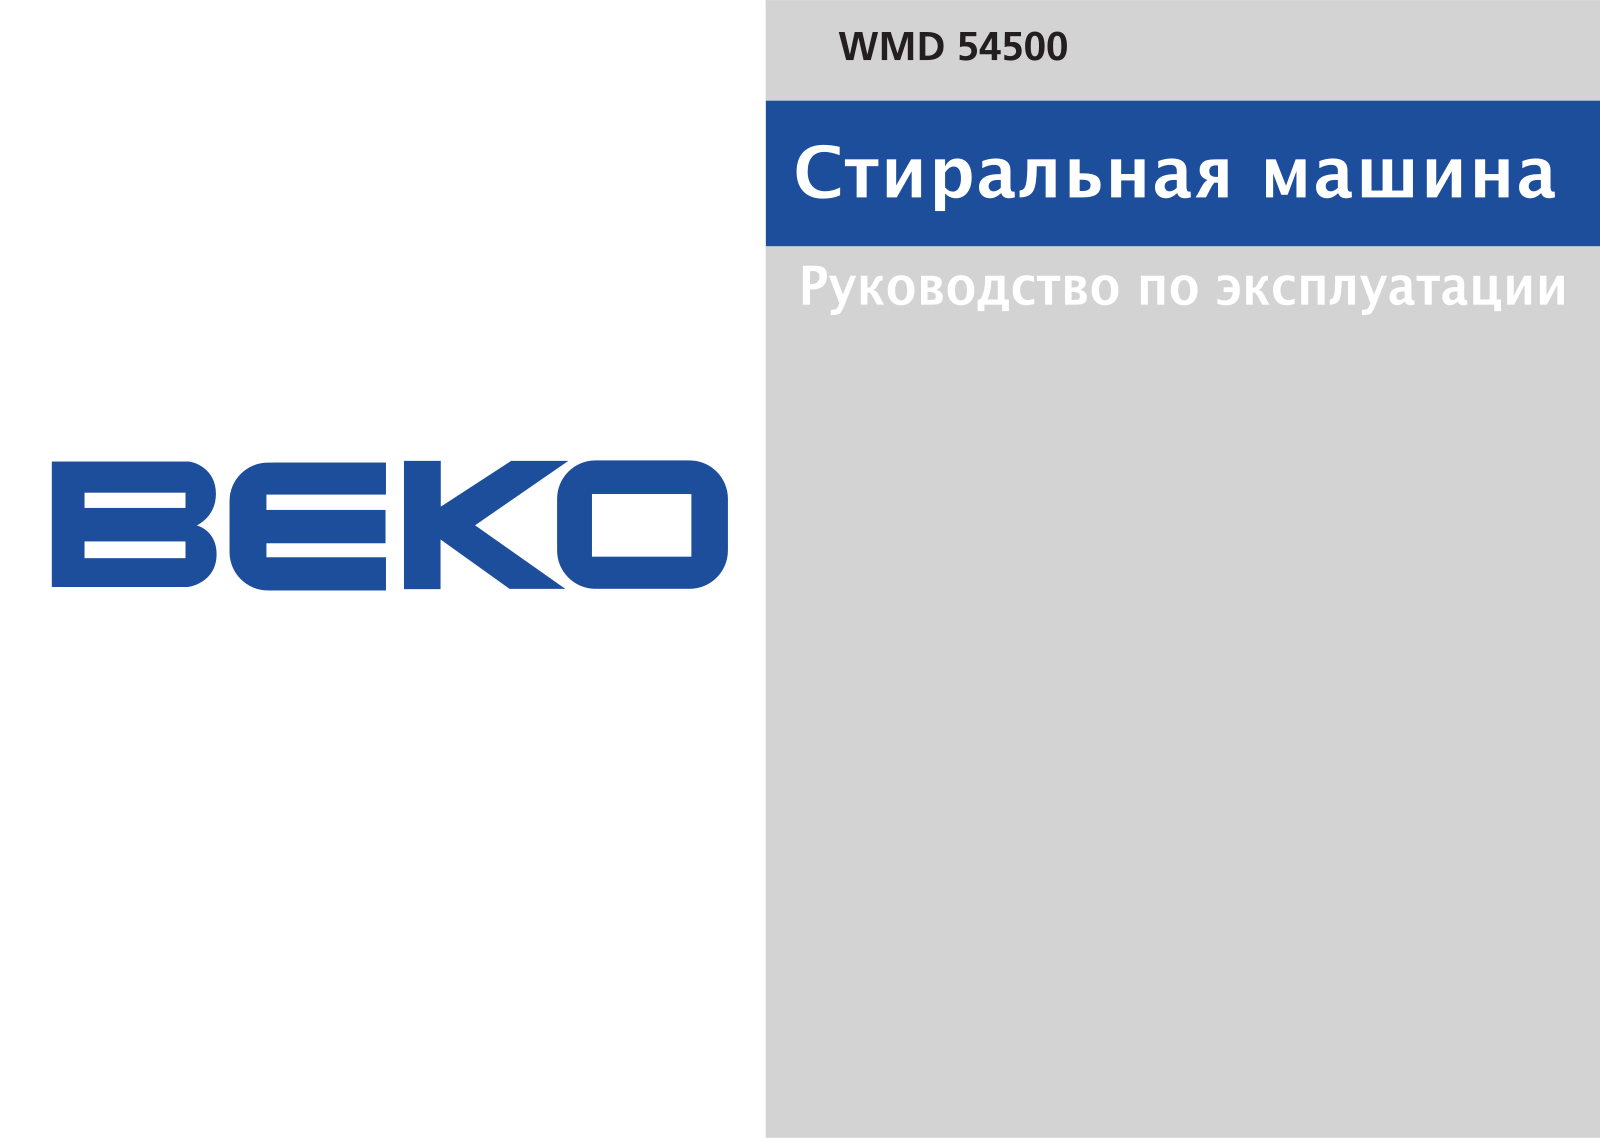 BEKO WMD 54500 User Manual